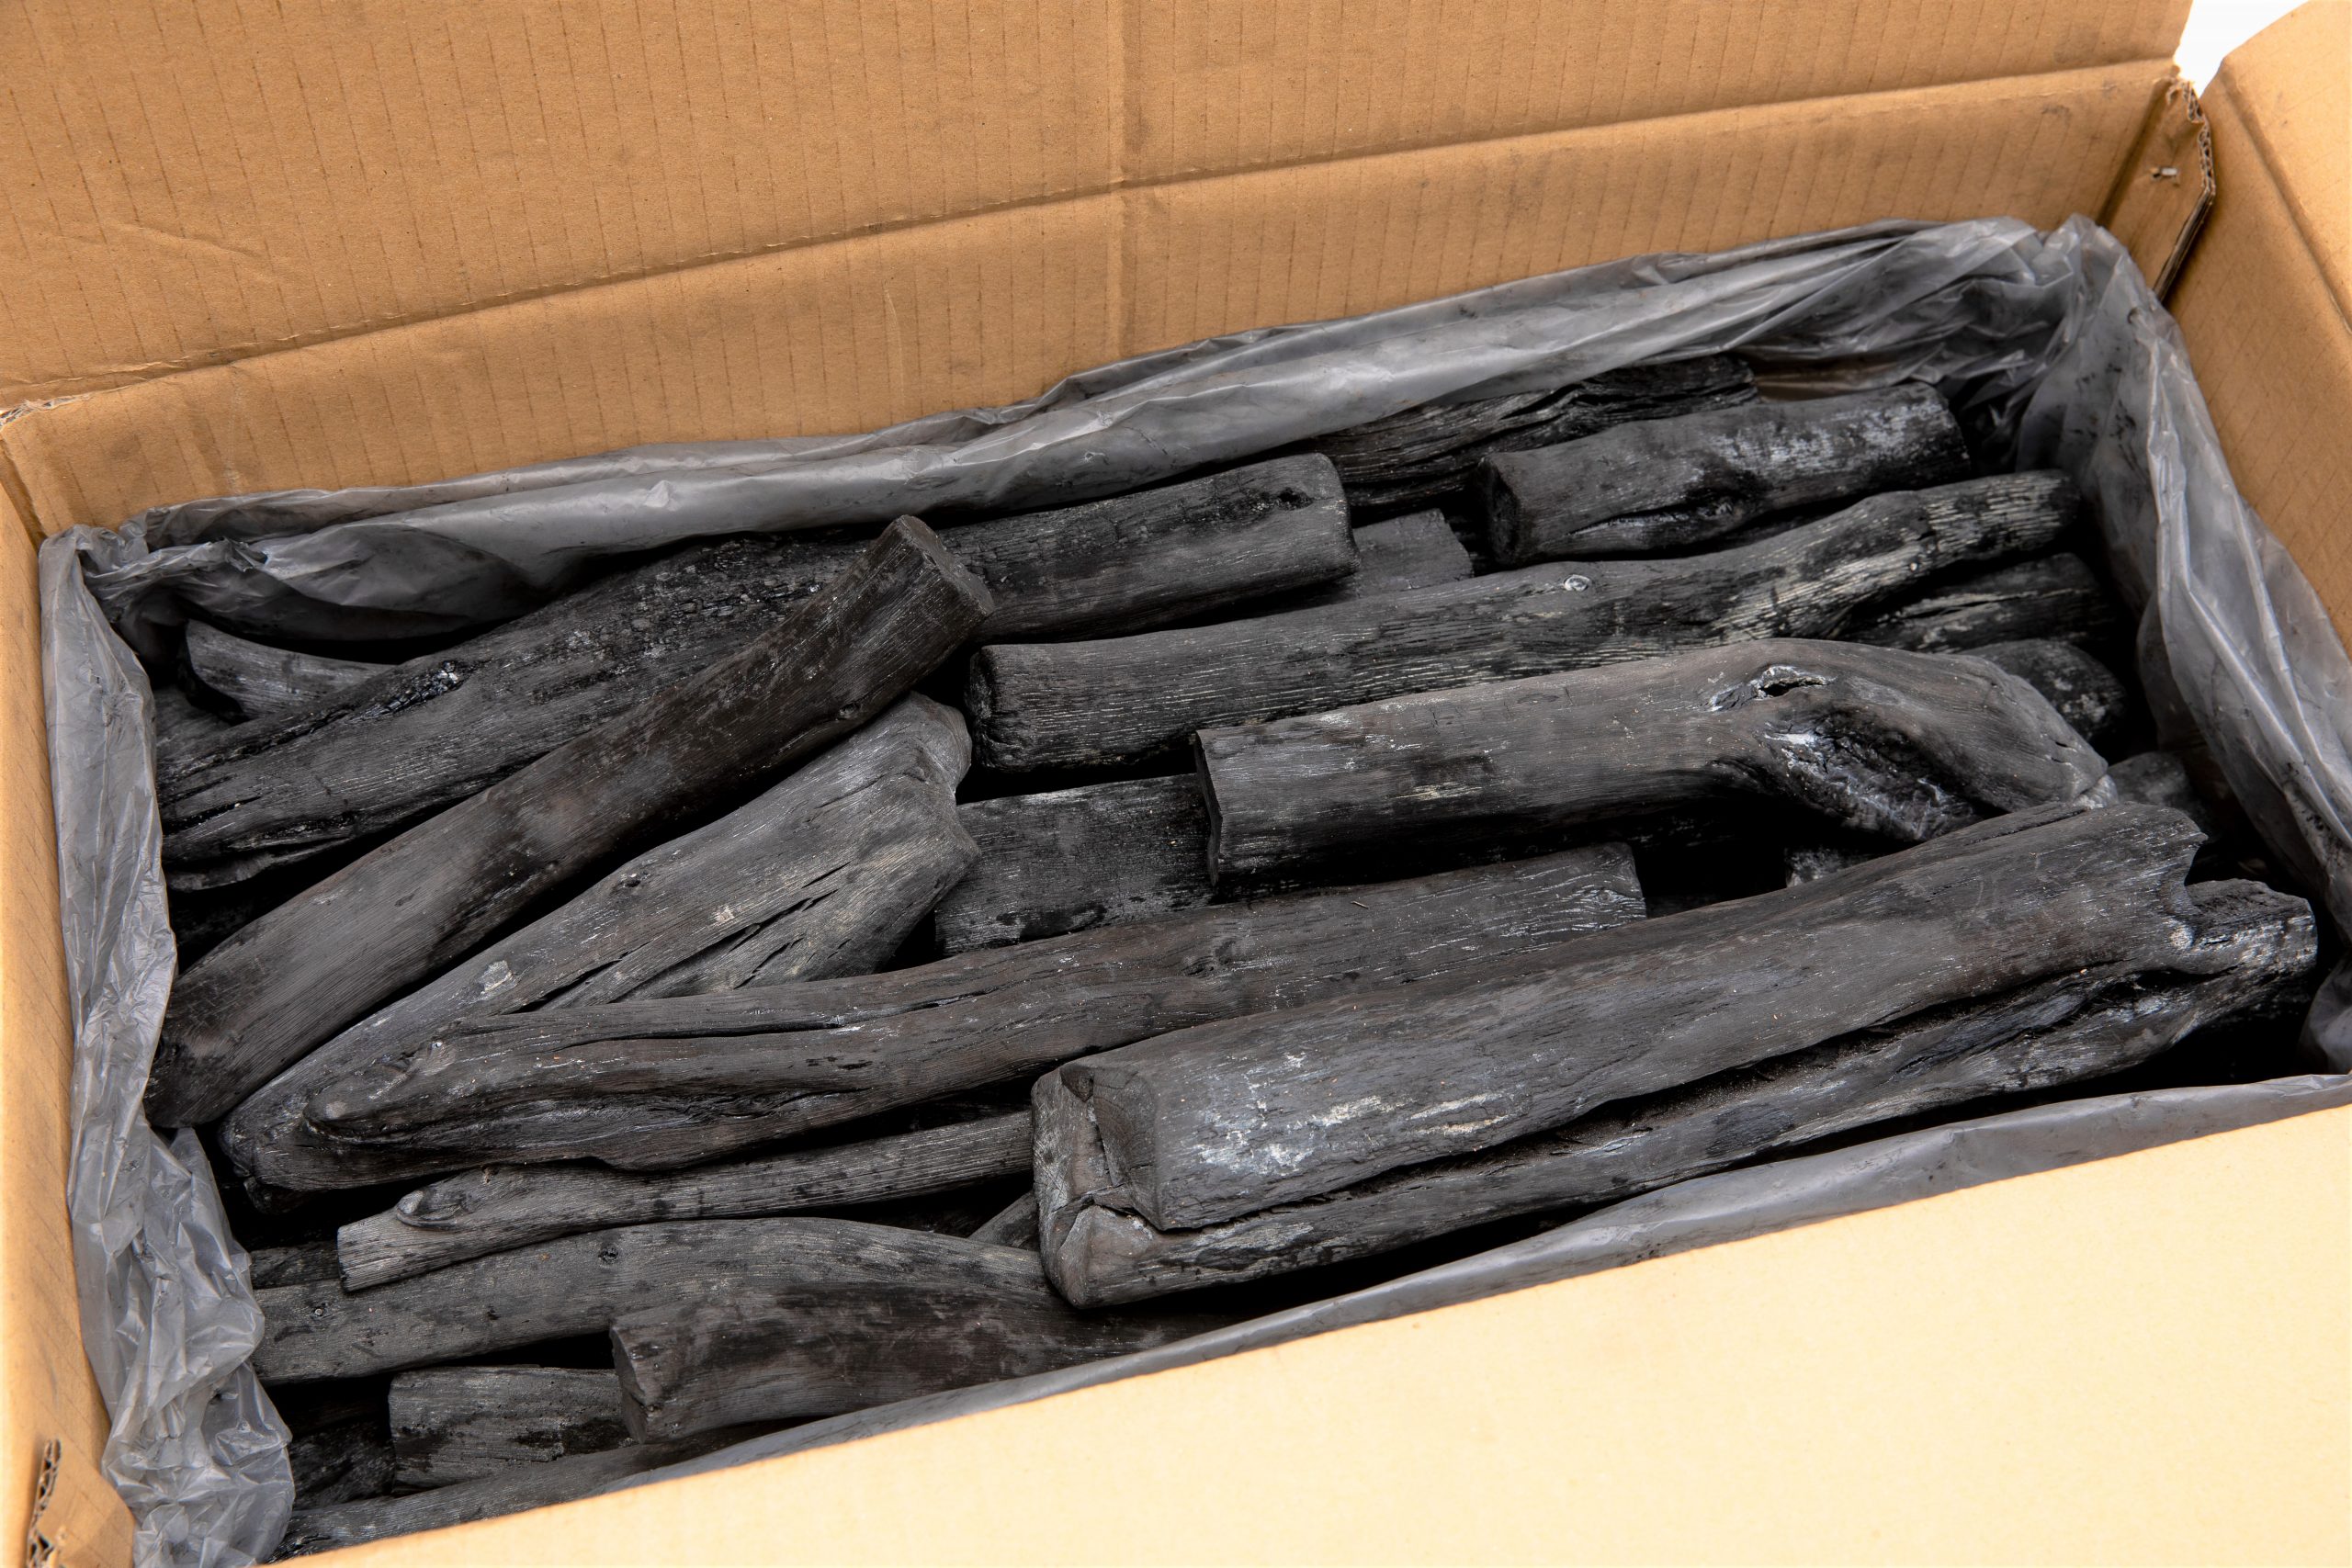 備長炭15kg箱裝- 岳紘木炭|備長炭|傳統炭|相思炭|龍眼炭|竹炭